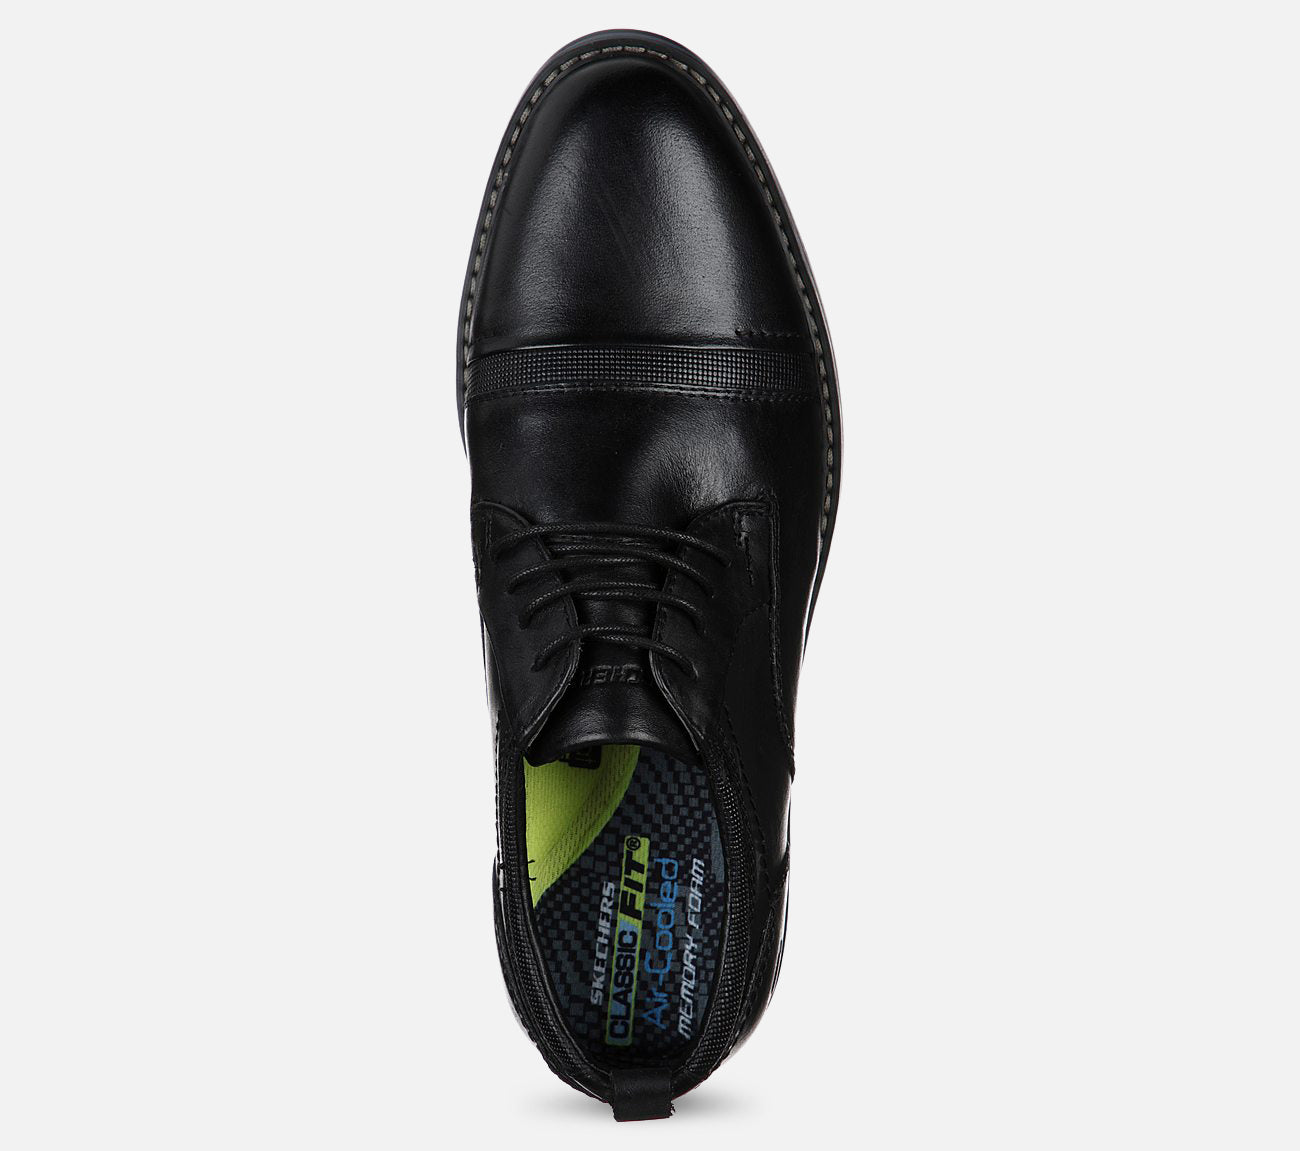 Bregman - Selone Shoe Skechers